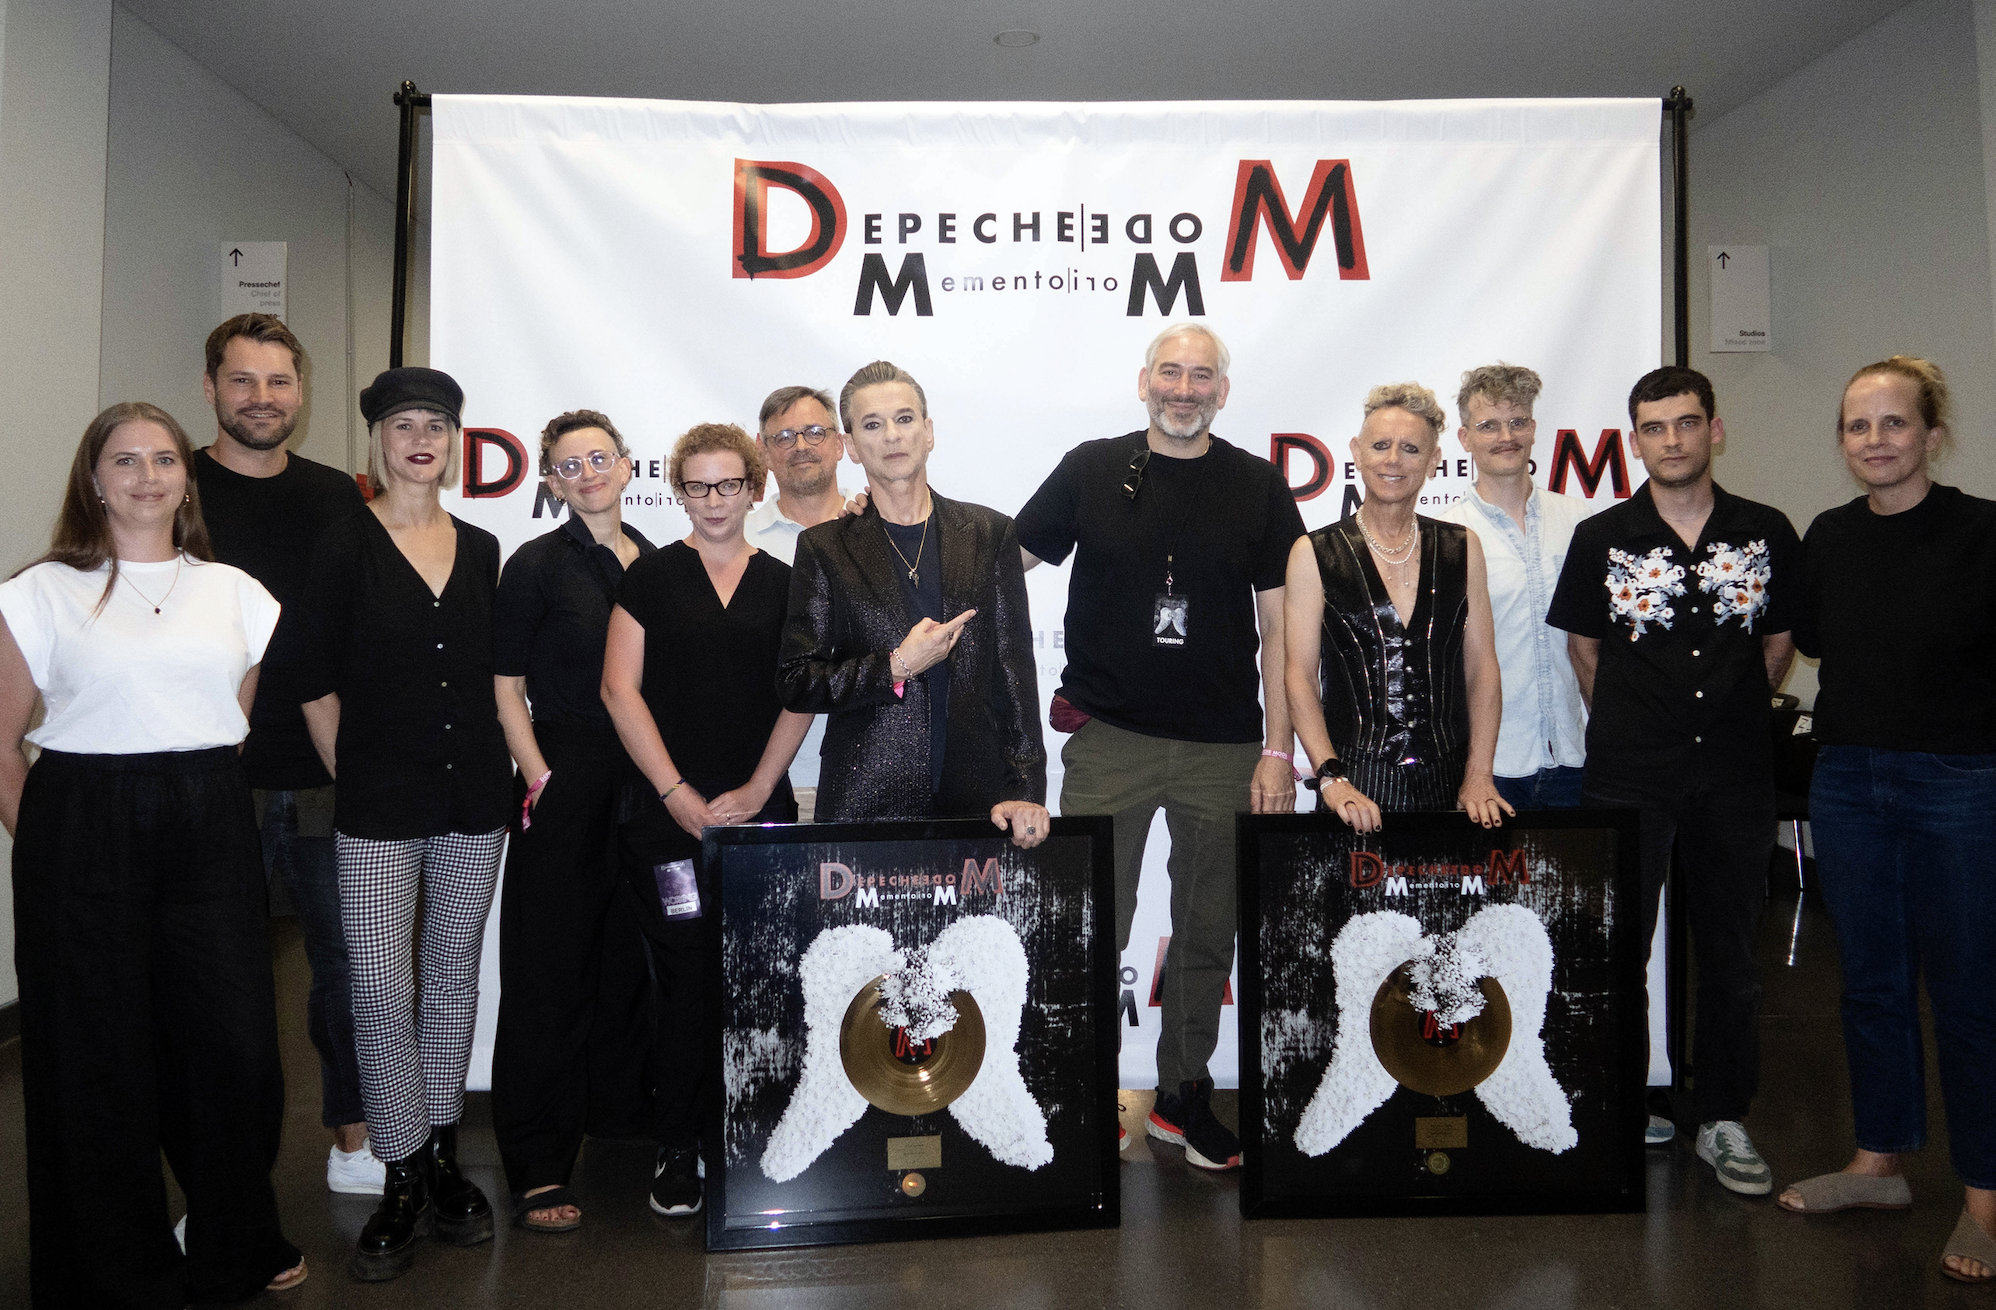 Depeche Mode feiern mit „Memento Mori“ Award-Regen und Chart-Rekord